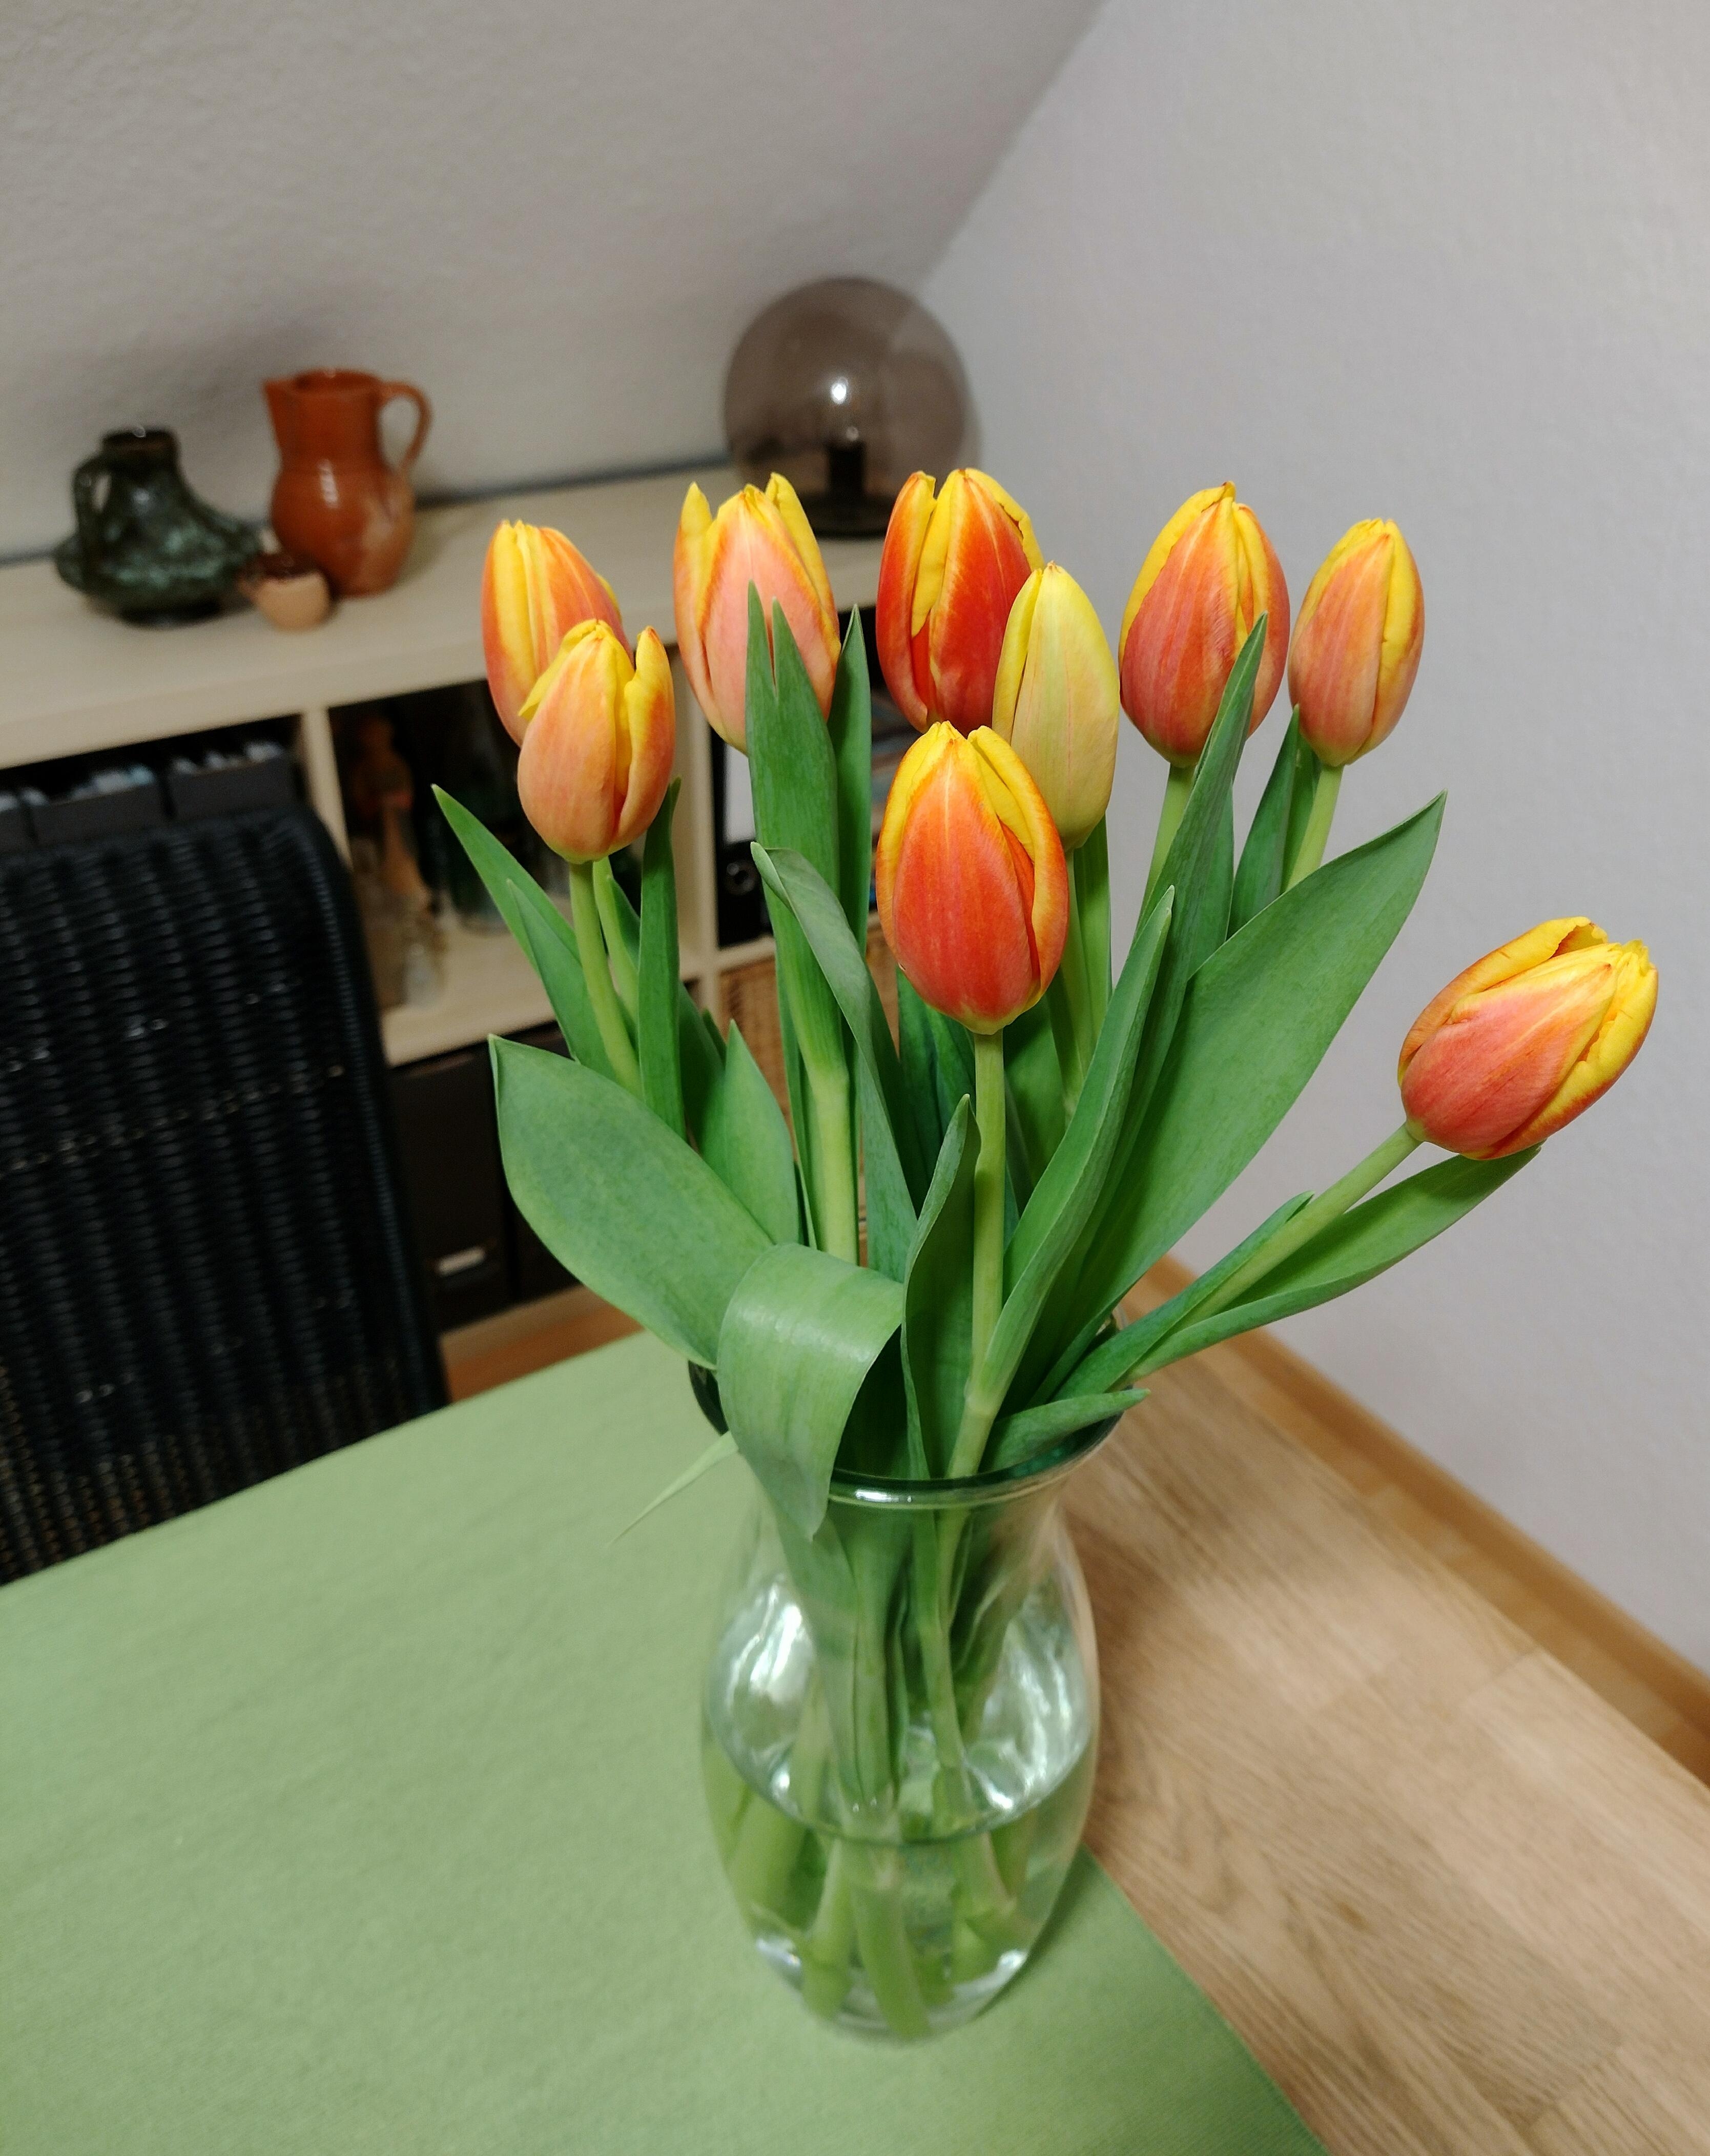 #frischeblumen #tulpen #orange #glassvase #blumenliebe